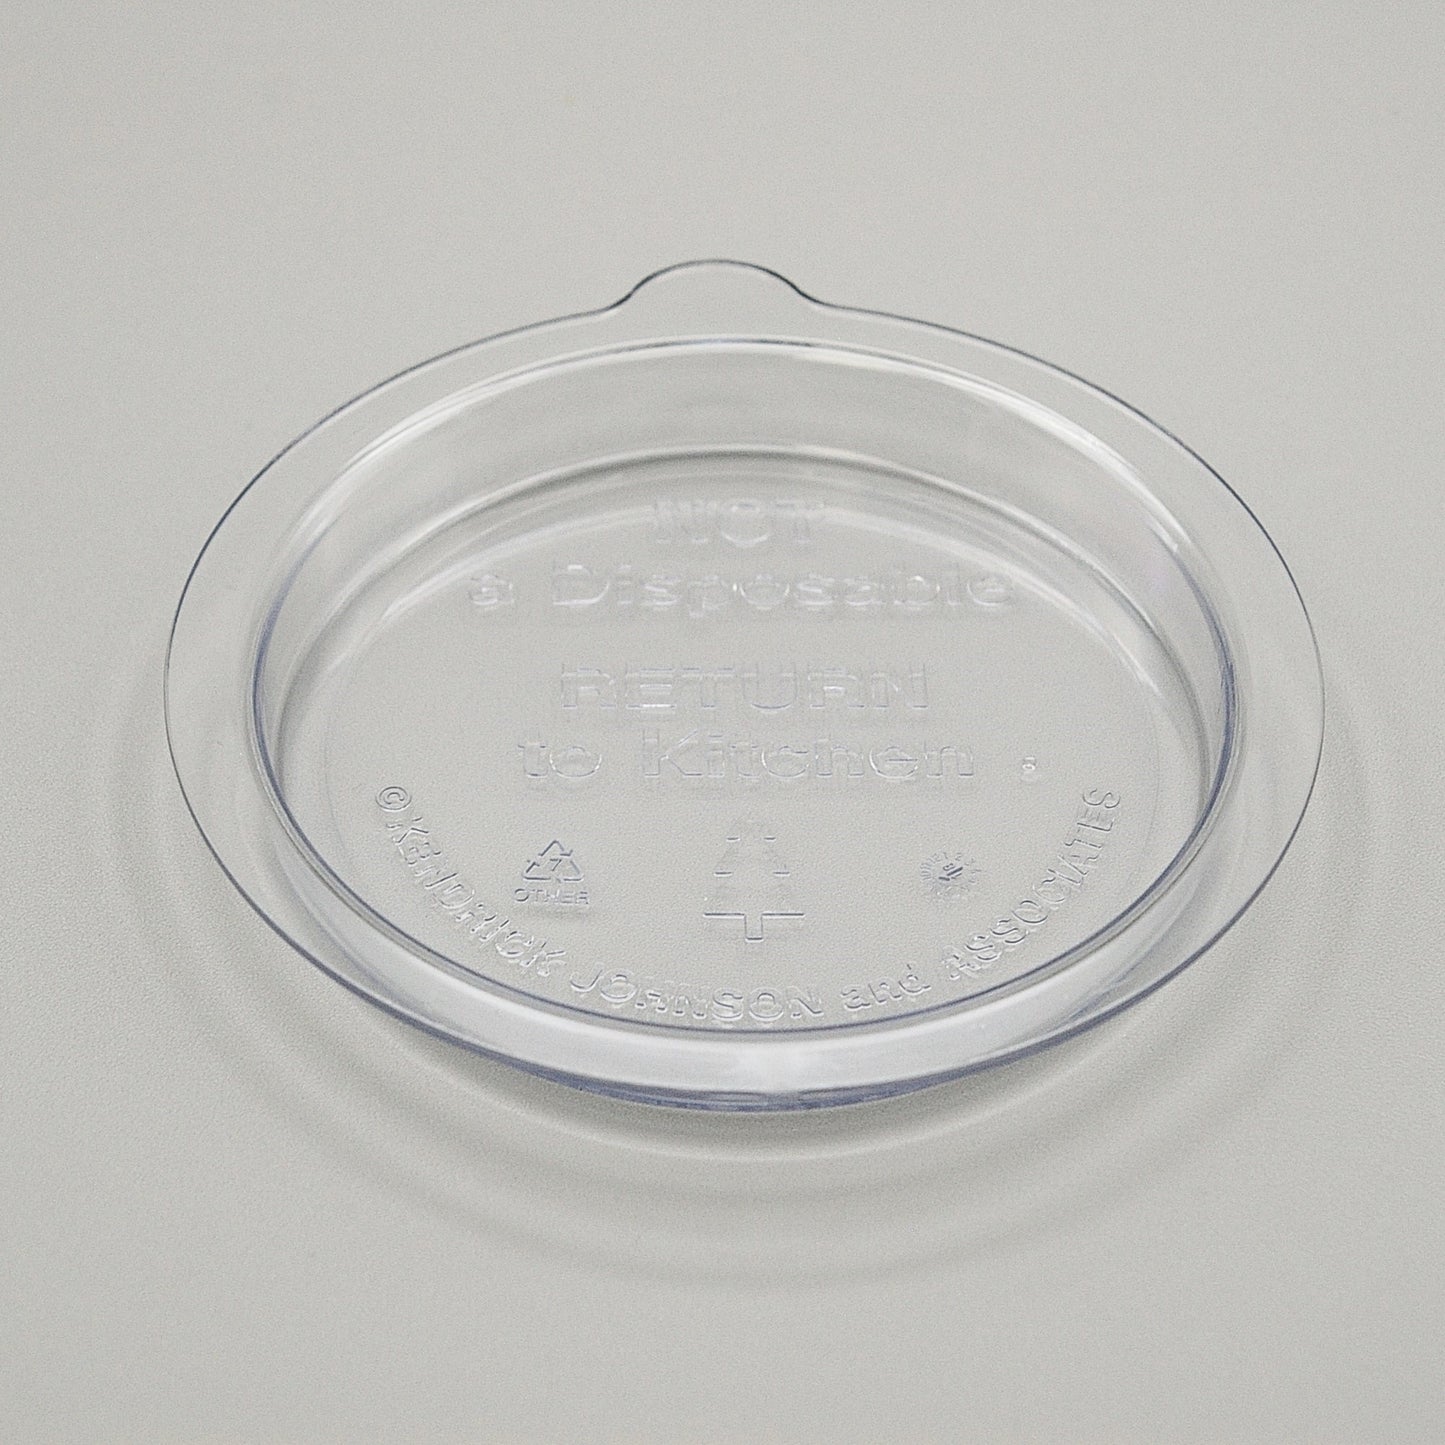 LD425CLX - High Temp Reusable Plastic Clear Soup Bowl Lid